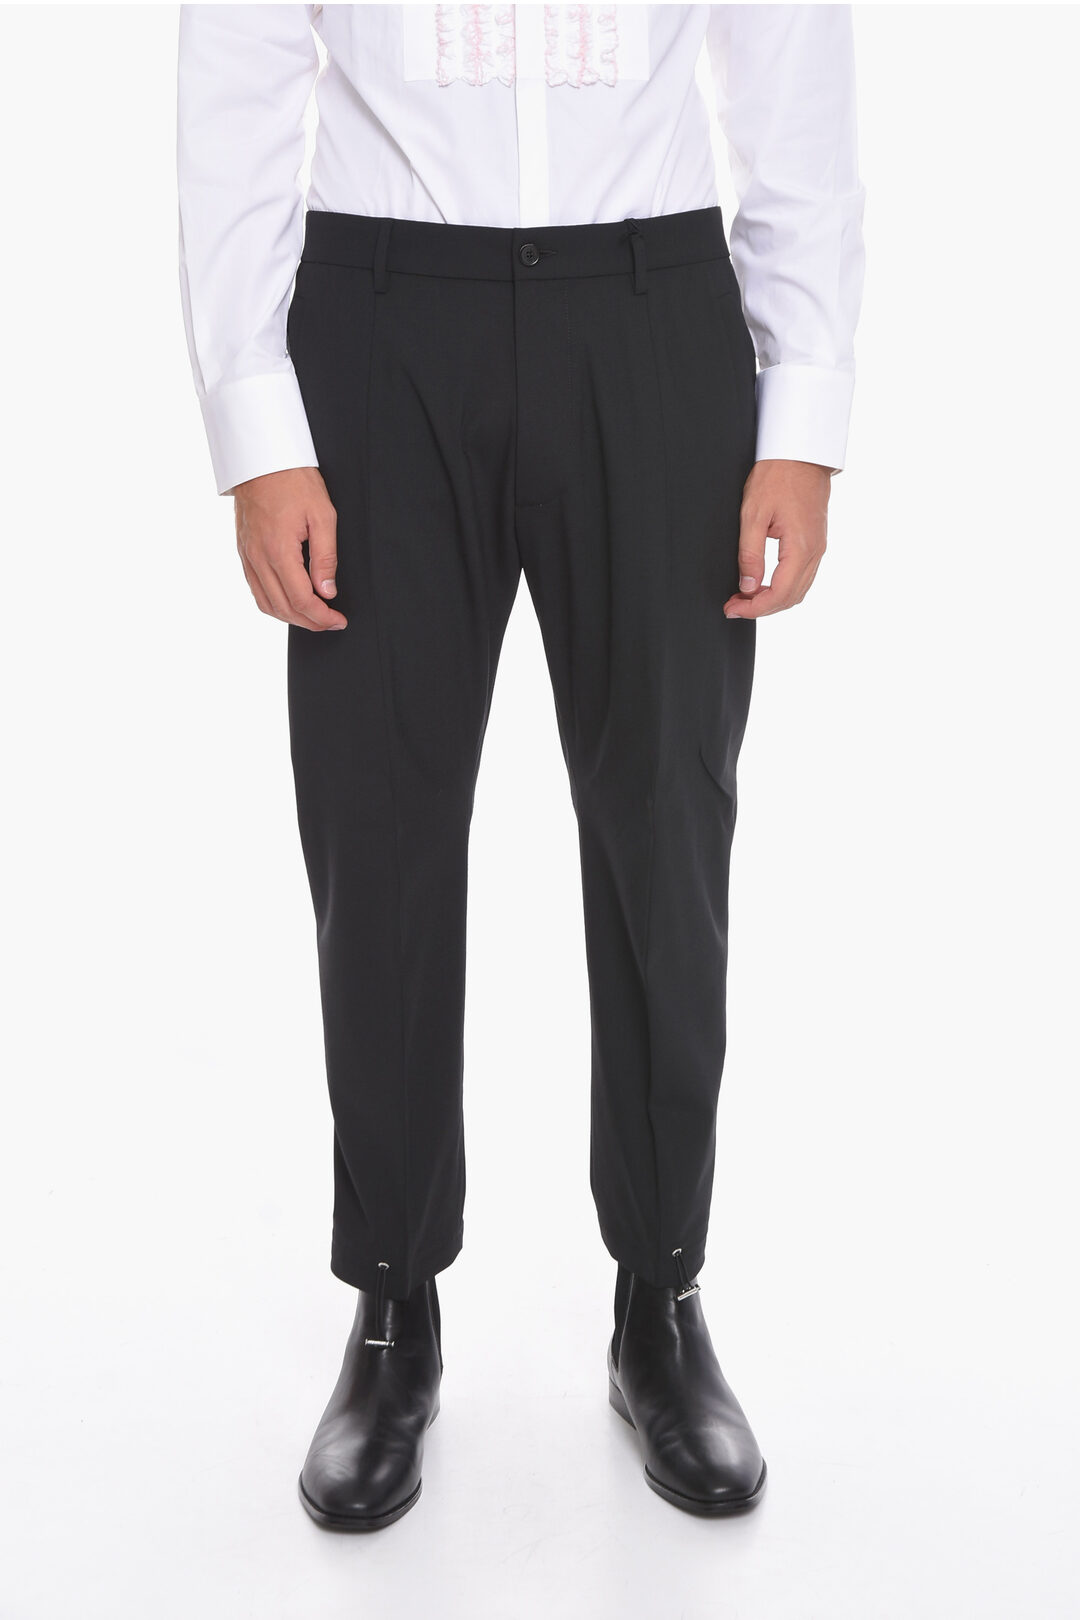 Wide-leg Wool-blend Pants - Taupe - Ladies | H&M US